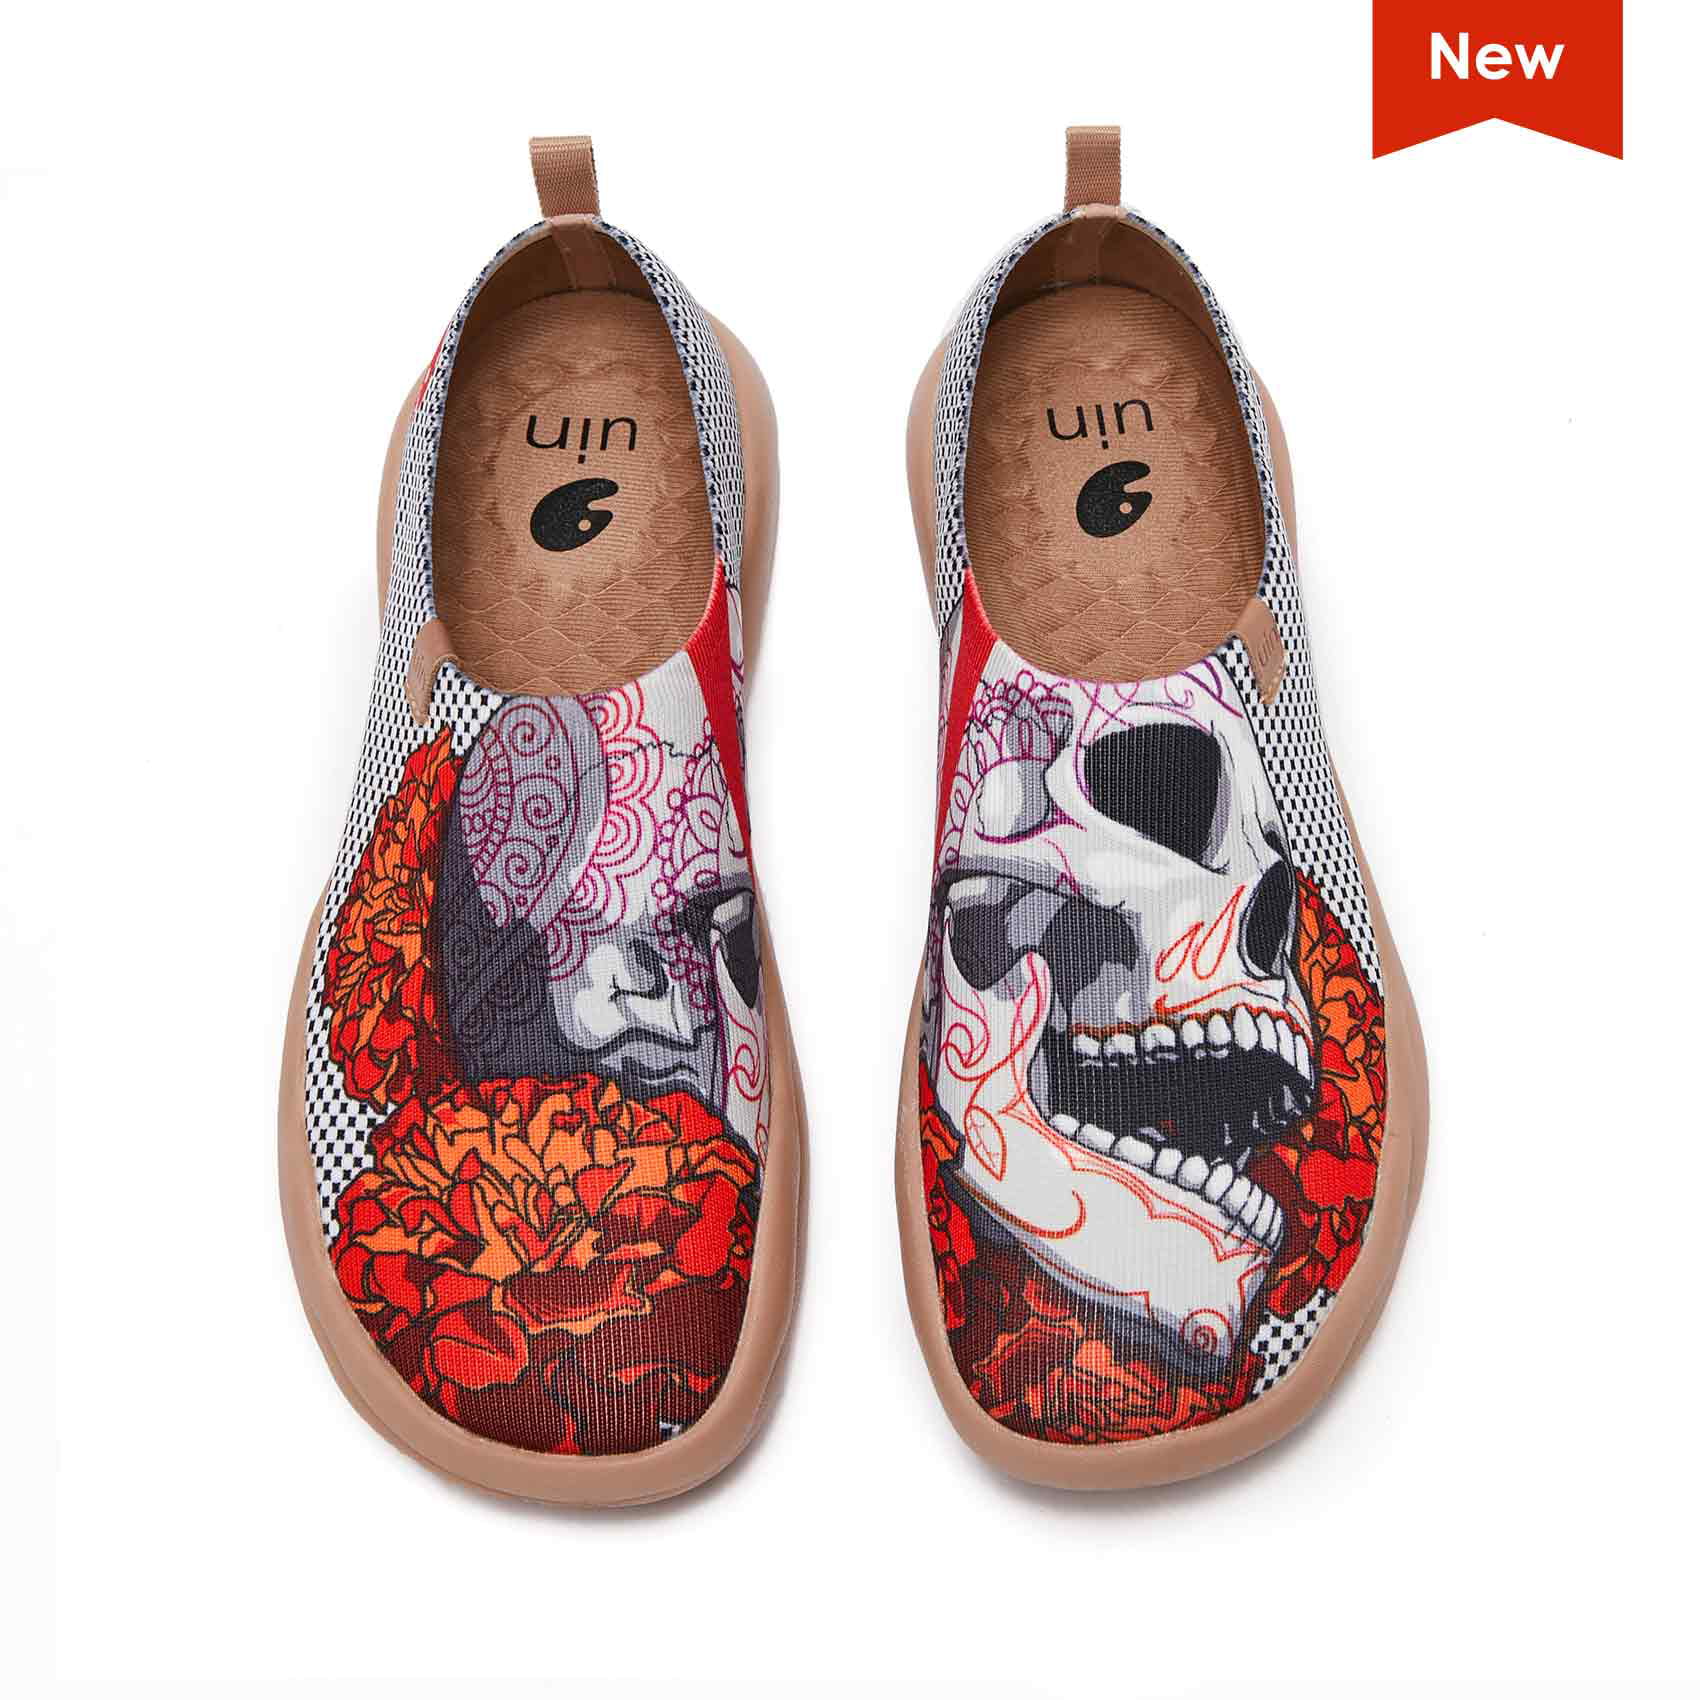 UIN Women's Walking Shoes Slip On Casual Loafers Lightweight Comfort Fashion Sneaker Toledo II